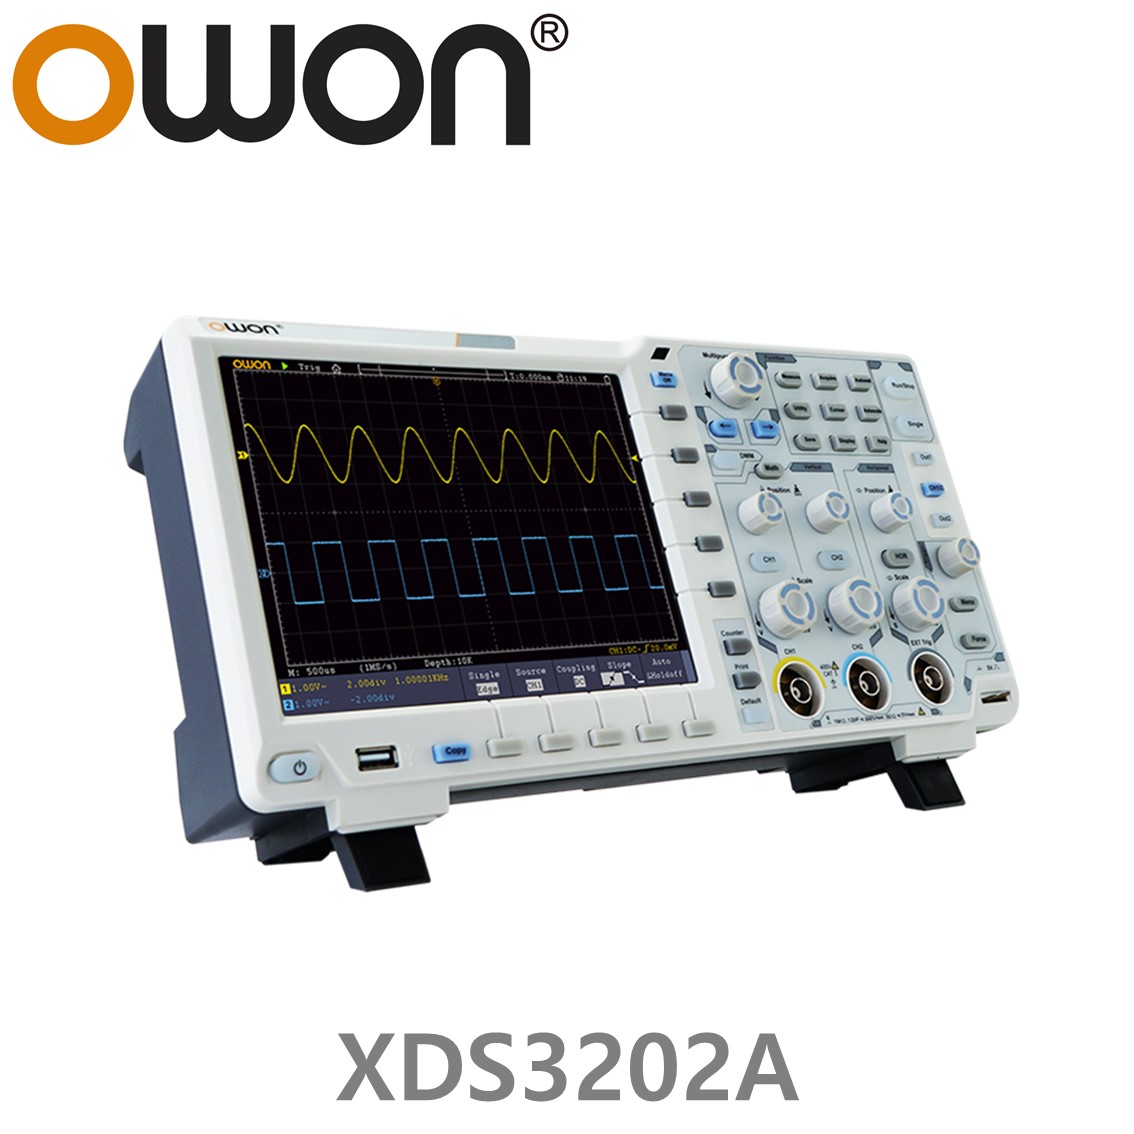 [ OWON ] XDS3202A 올인원 디지탈 오실로스코프 ( 200MHz, 2CH, 1GS/s, 데이타로깅, 멀티미터, 임의파형발생기 )